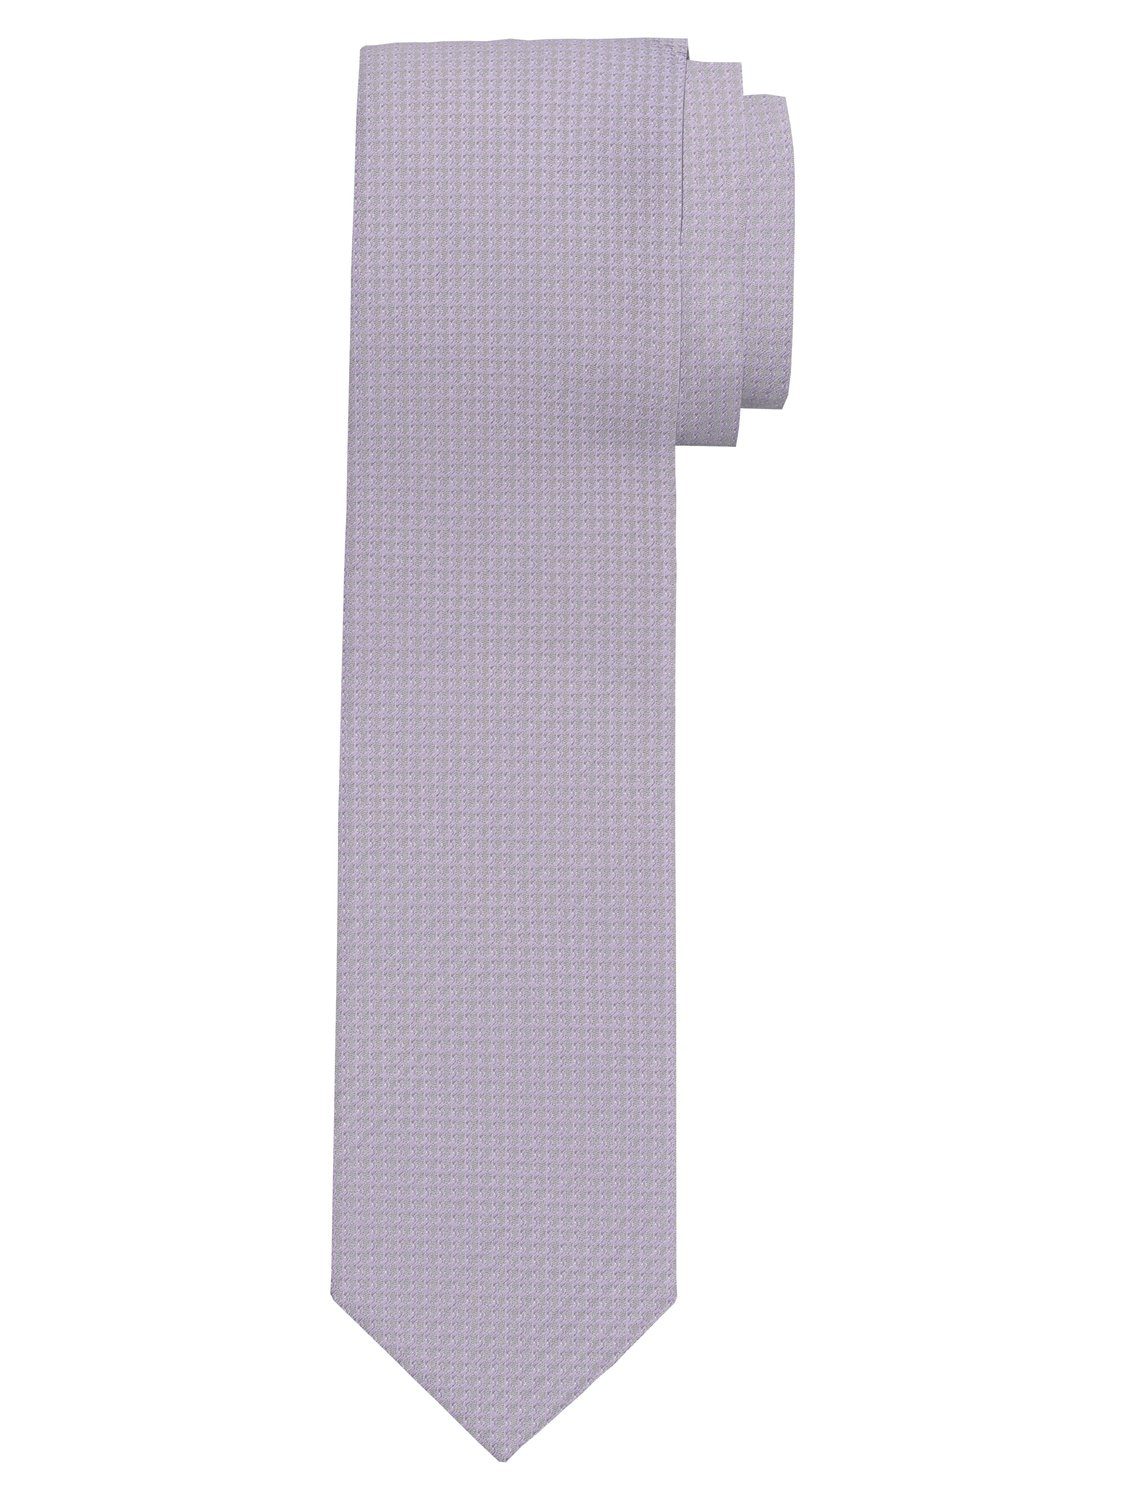 OLYMP Krawatte Krawatten flieder 1782/00